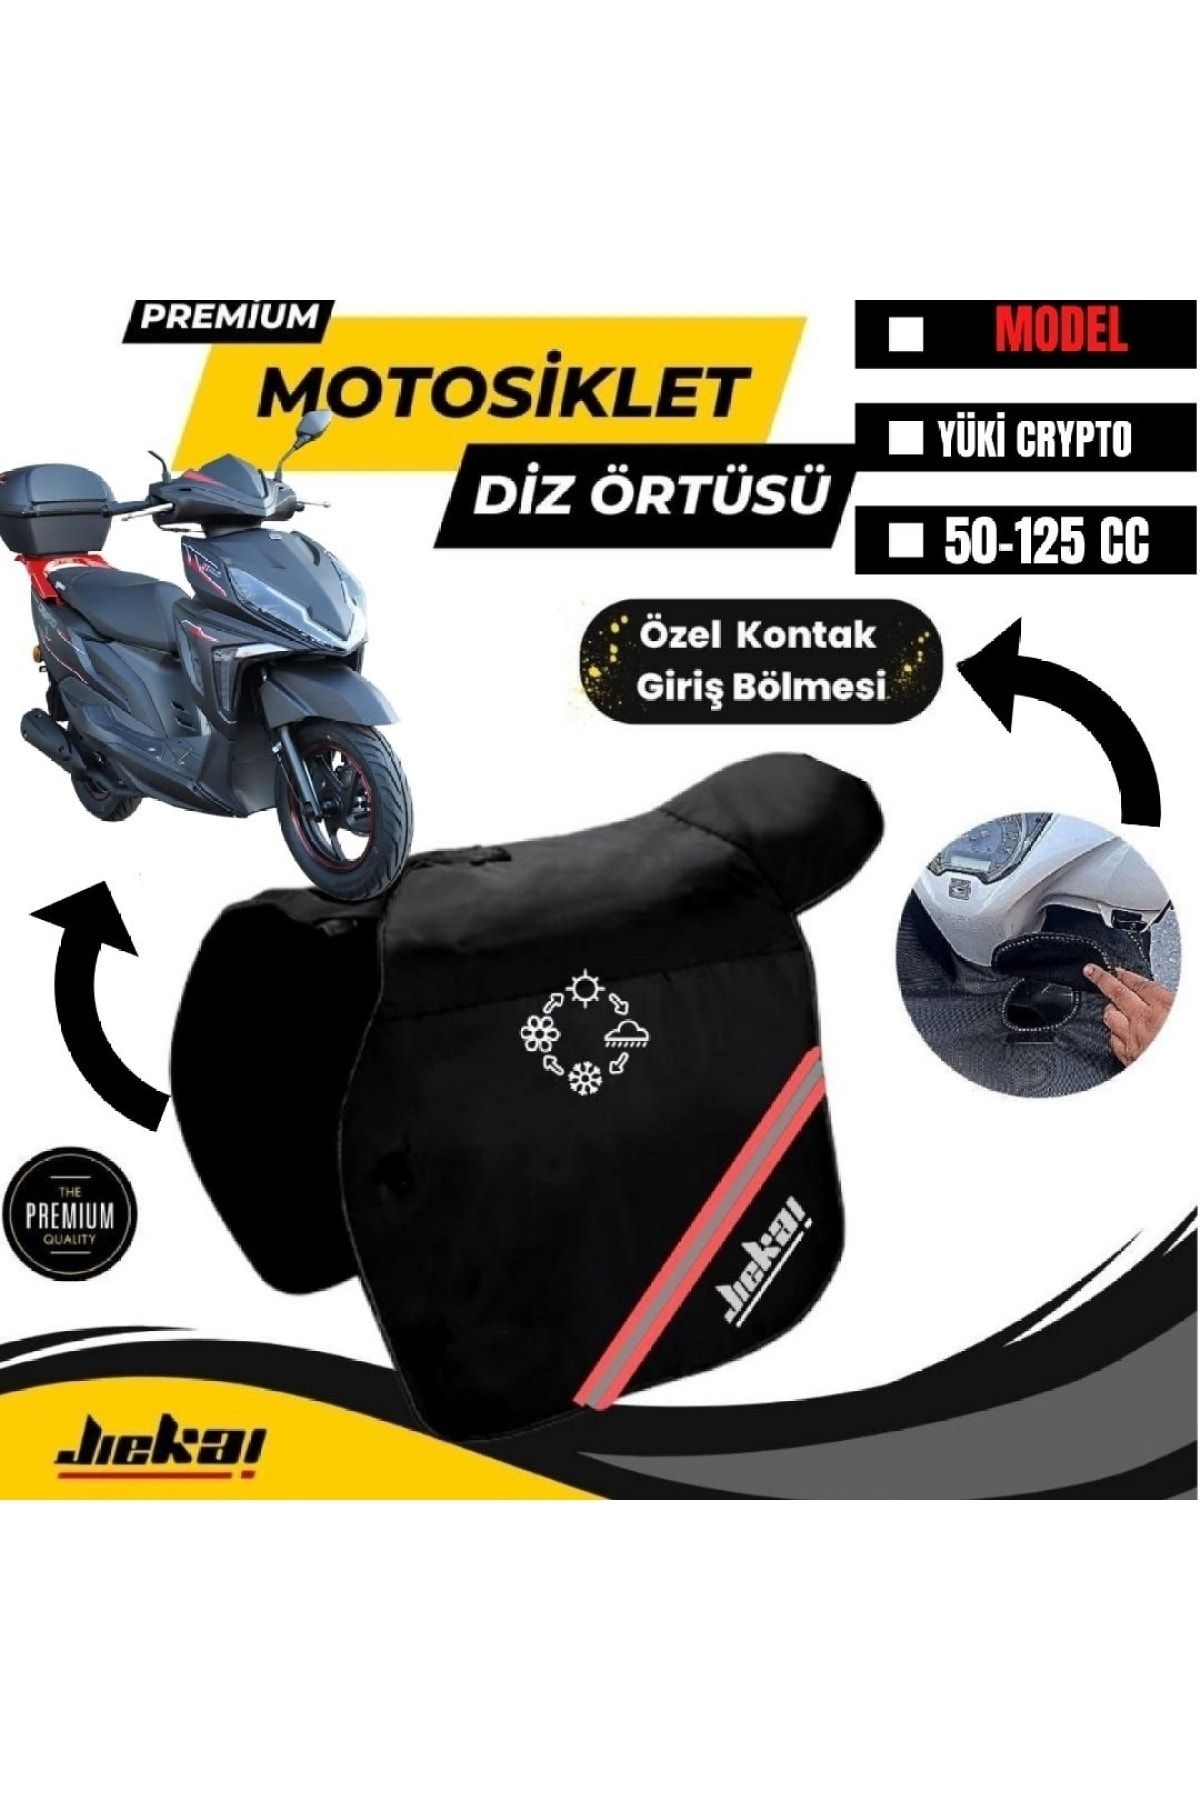 Motobros Yuki Crypto Motosiklet Diz Örtüsü Bacak Koruma Örtüsü Reflektörlü Su Ve Rüzgar Geçirmez